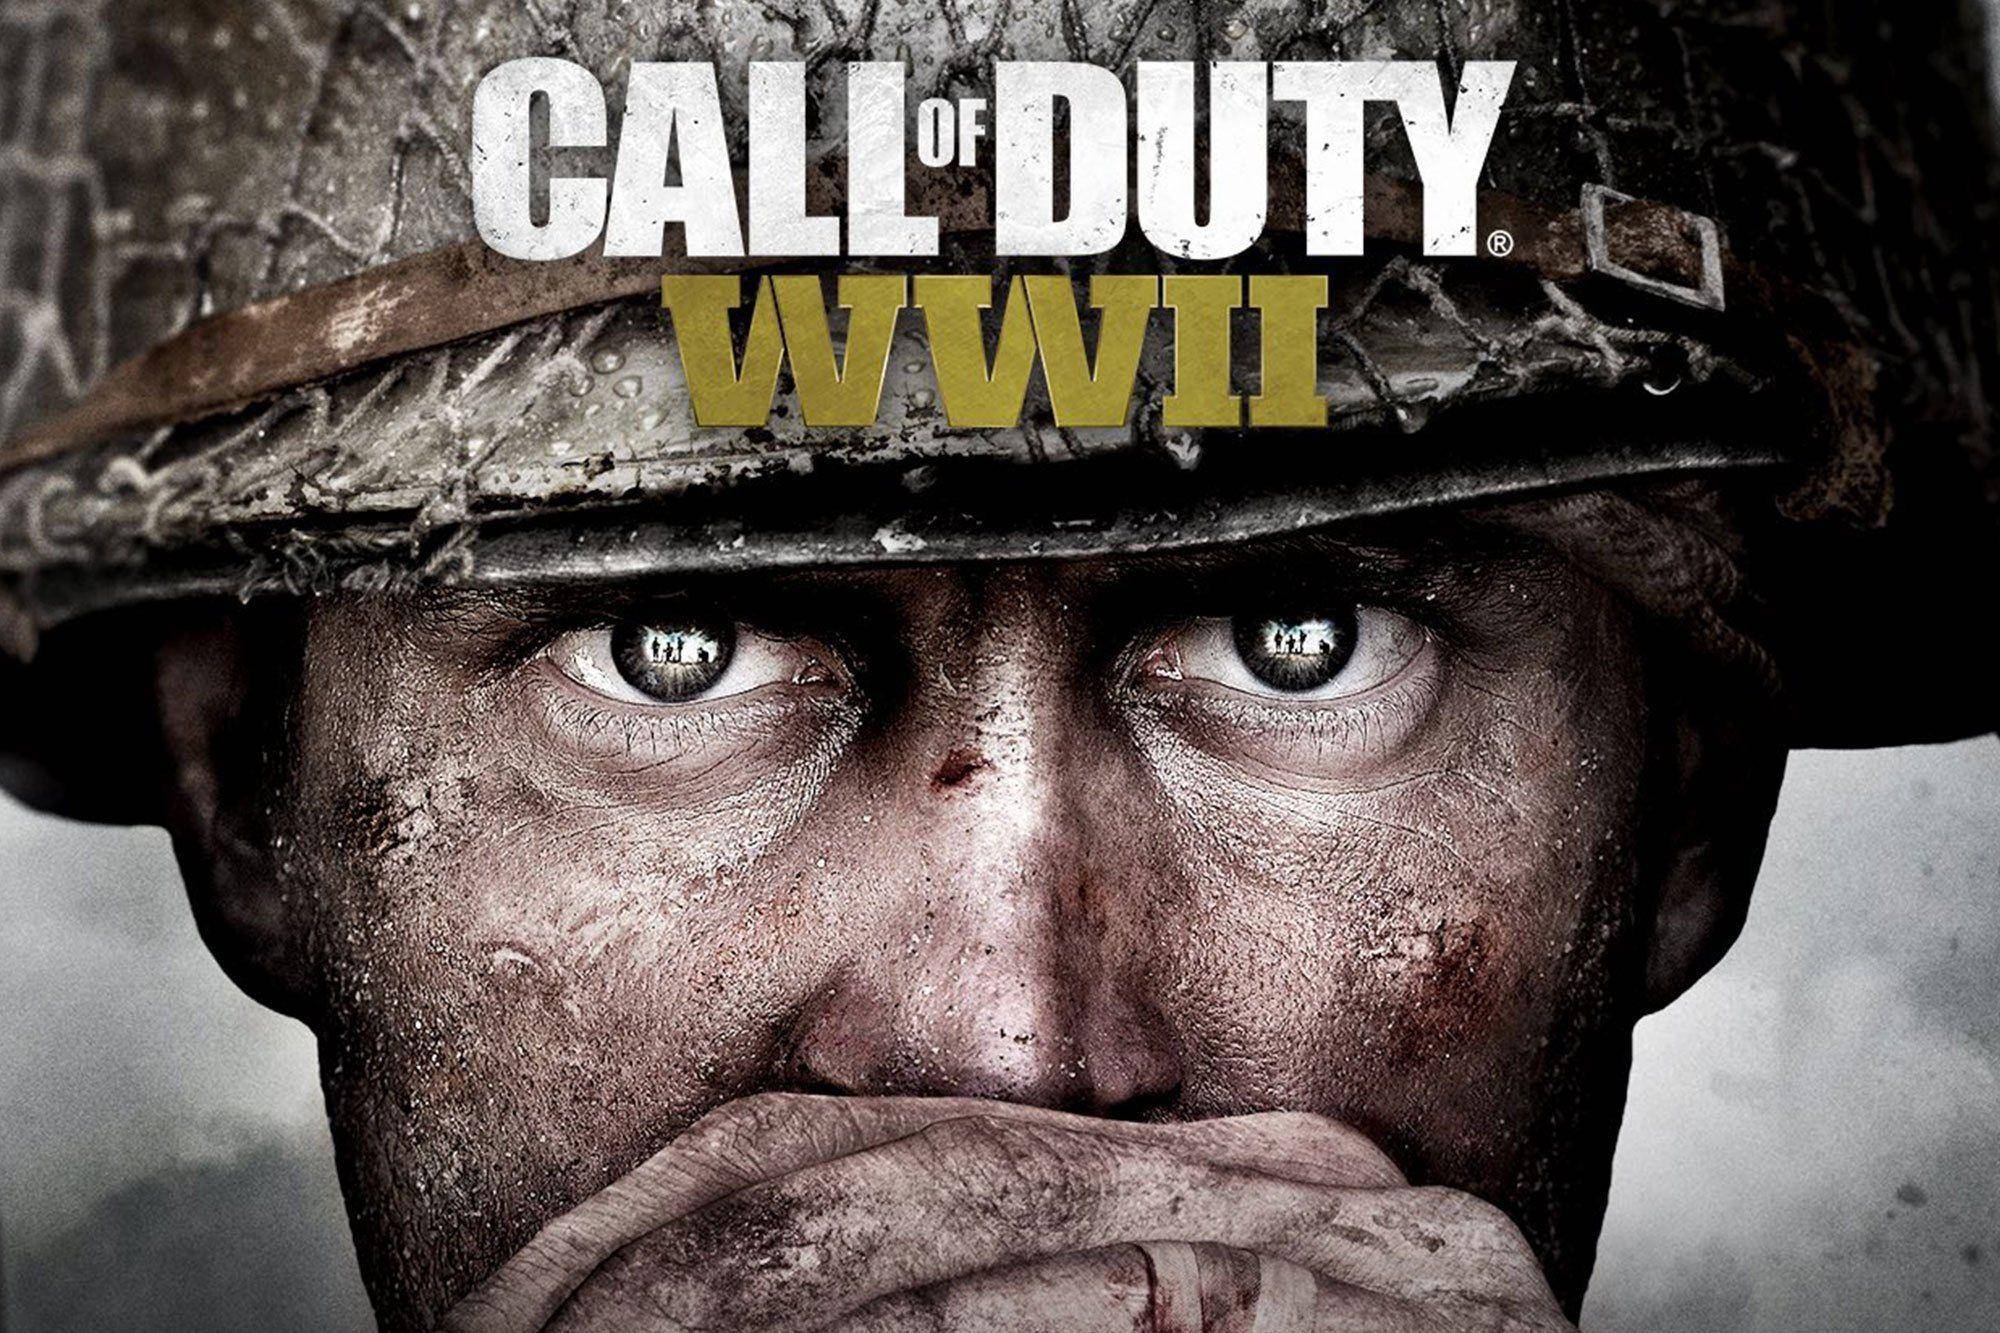 بازی Call of Duty: WW2